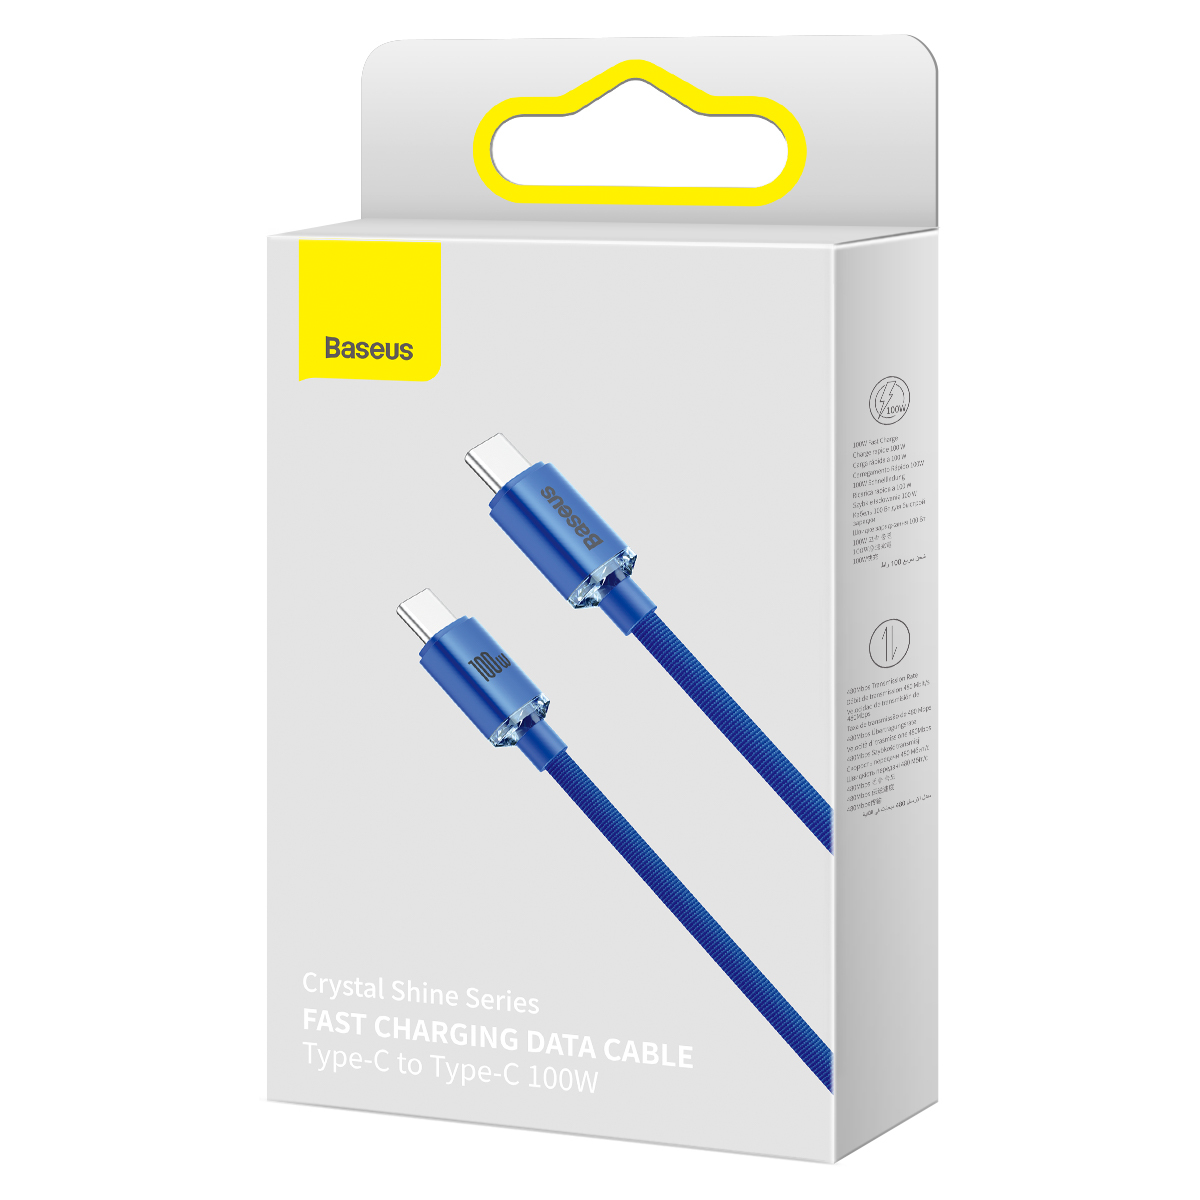 Kabel USB Baseus Crystal Shine Series do szybkiego ładowania USB Typ-C na Typ-C 1,2m niebieski Google Pixel 4a / 8